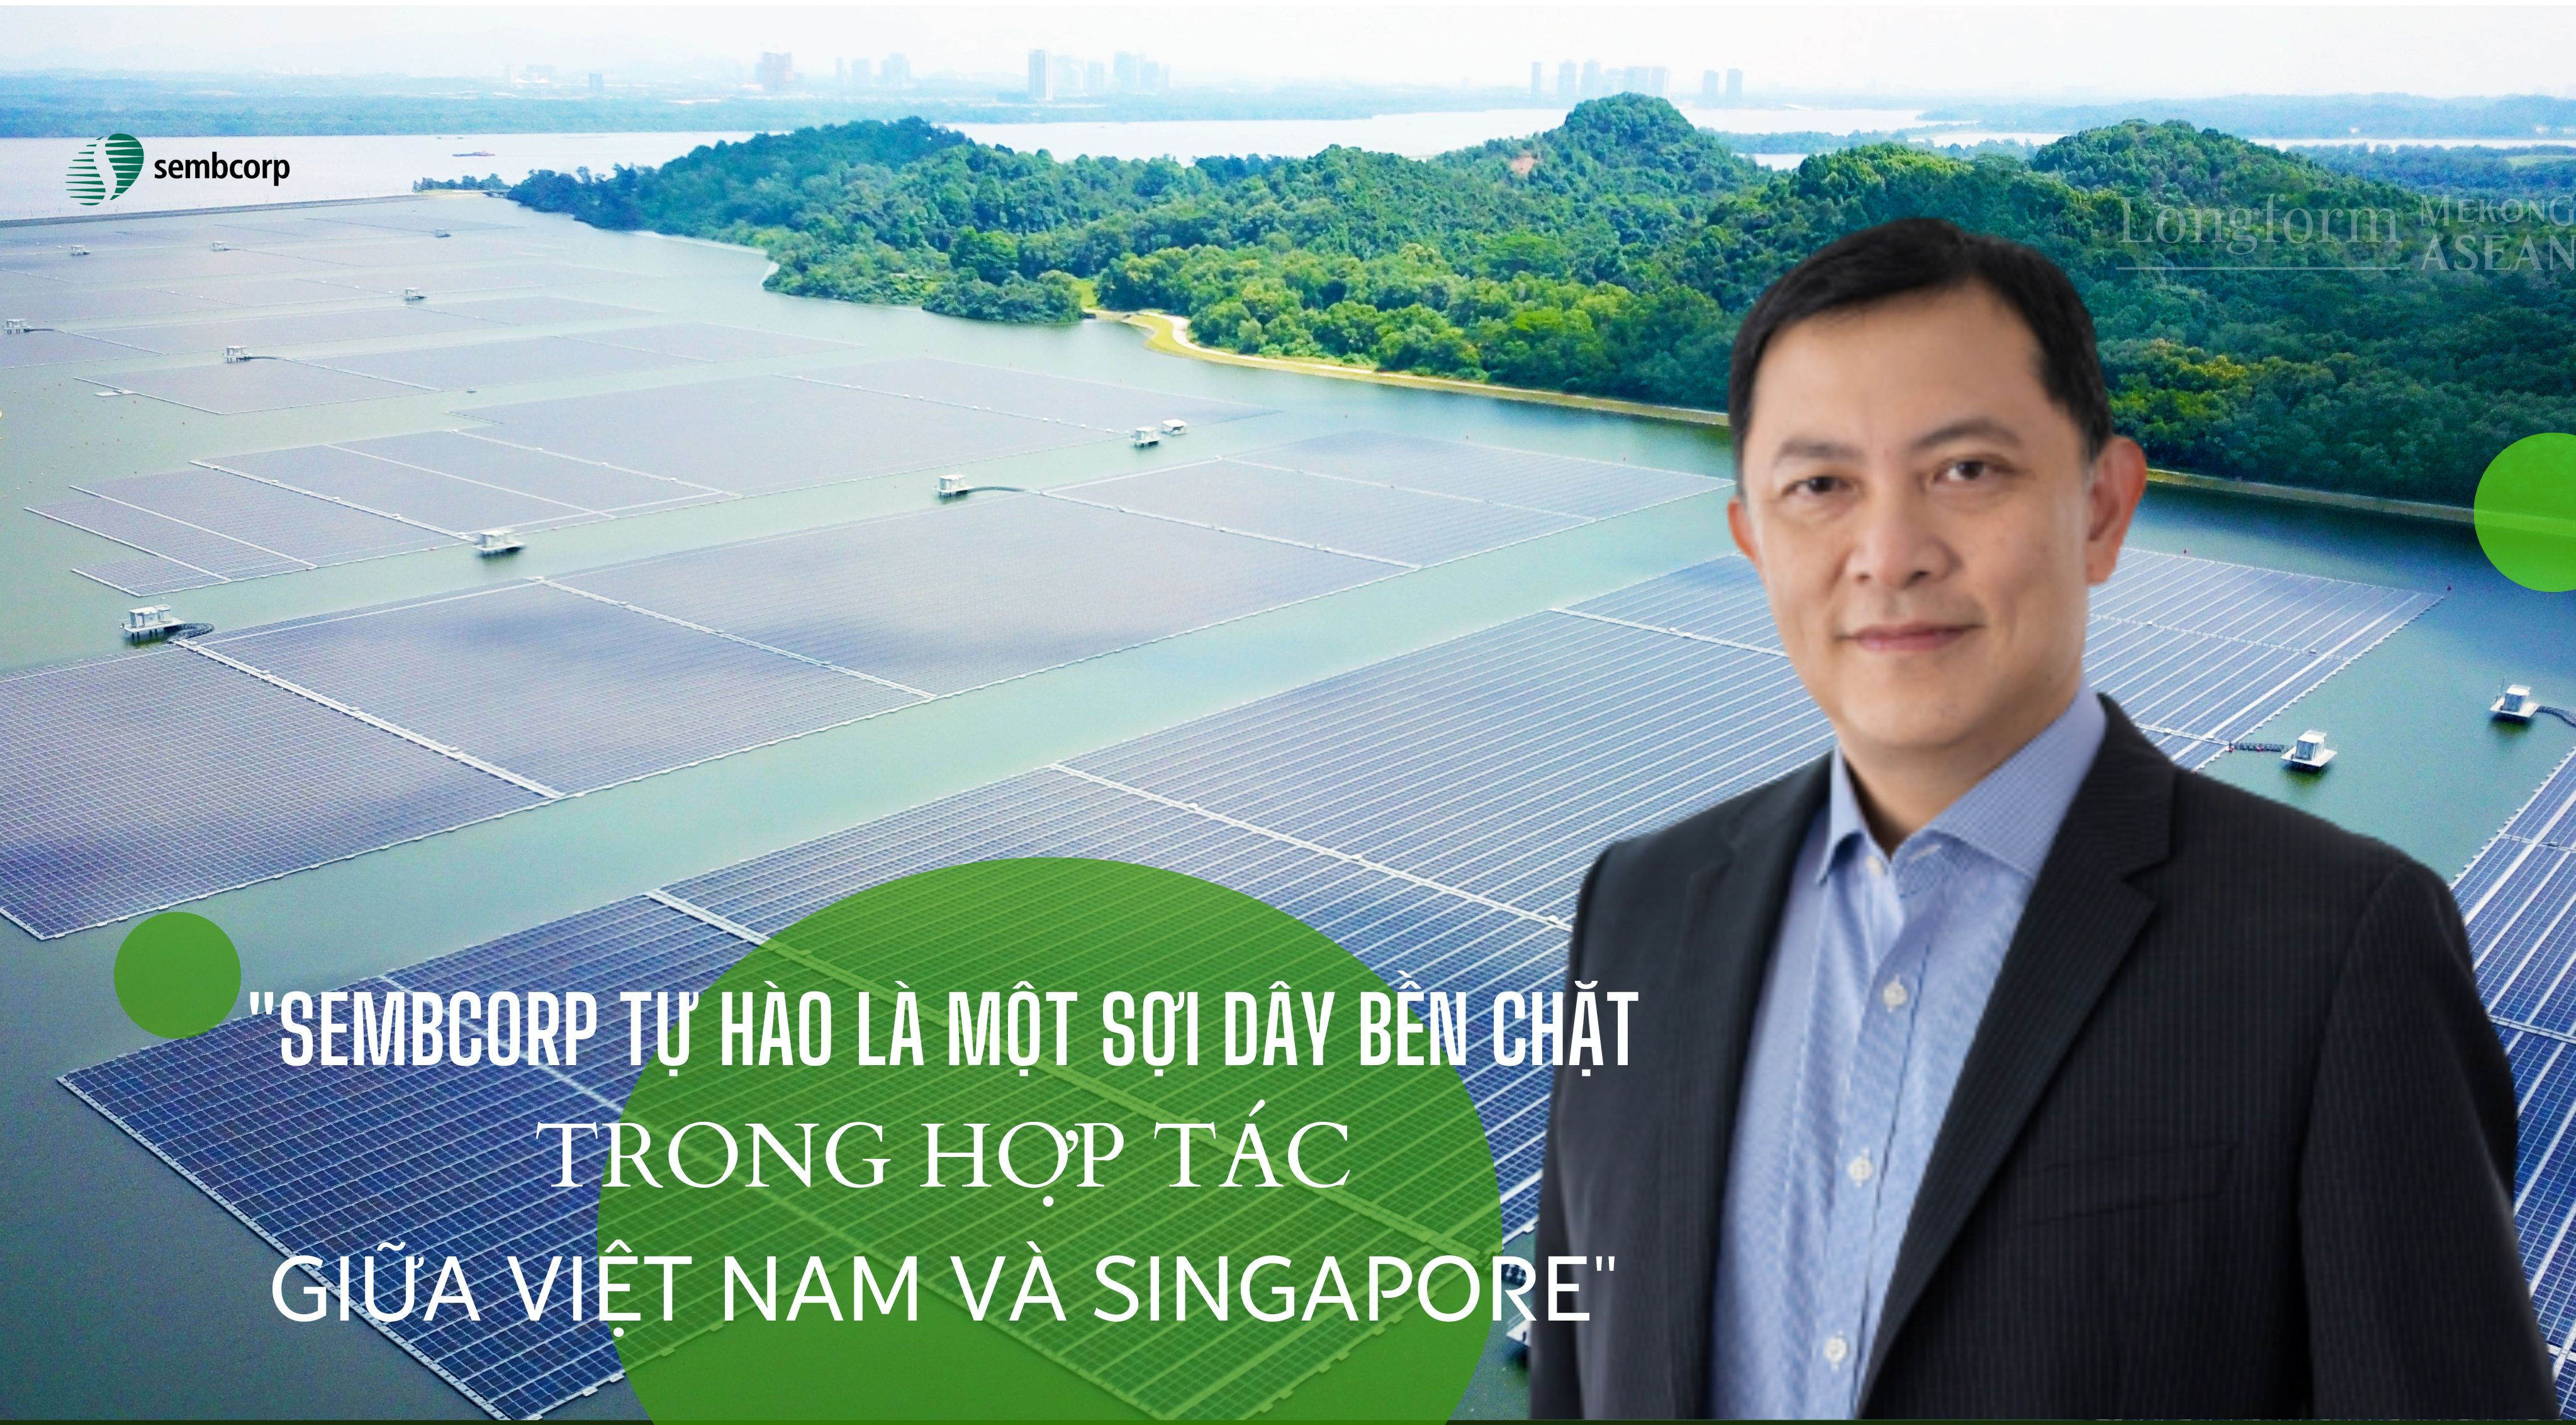 Ông Koh Chiap Khiong, Tổng Giám đốc Sembcorp Industries khu vực Singapore và Đông Nam Á. 